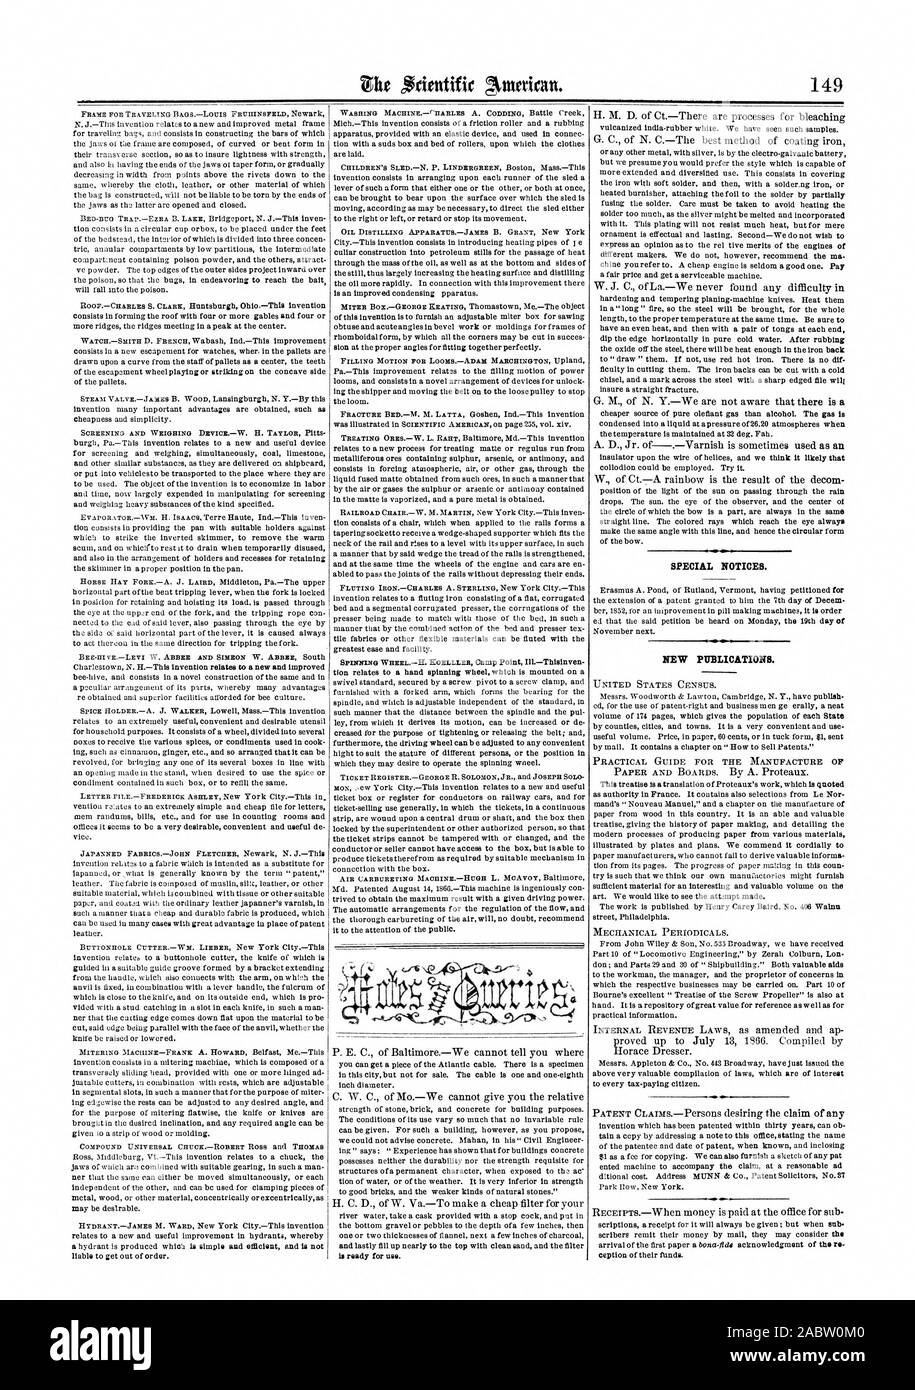 Avvisi speciali. Nuove pubblicazioni., Scientific American, 1866-09-01 Foto Stock